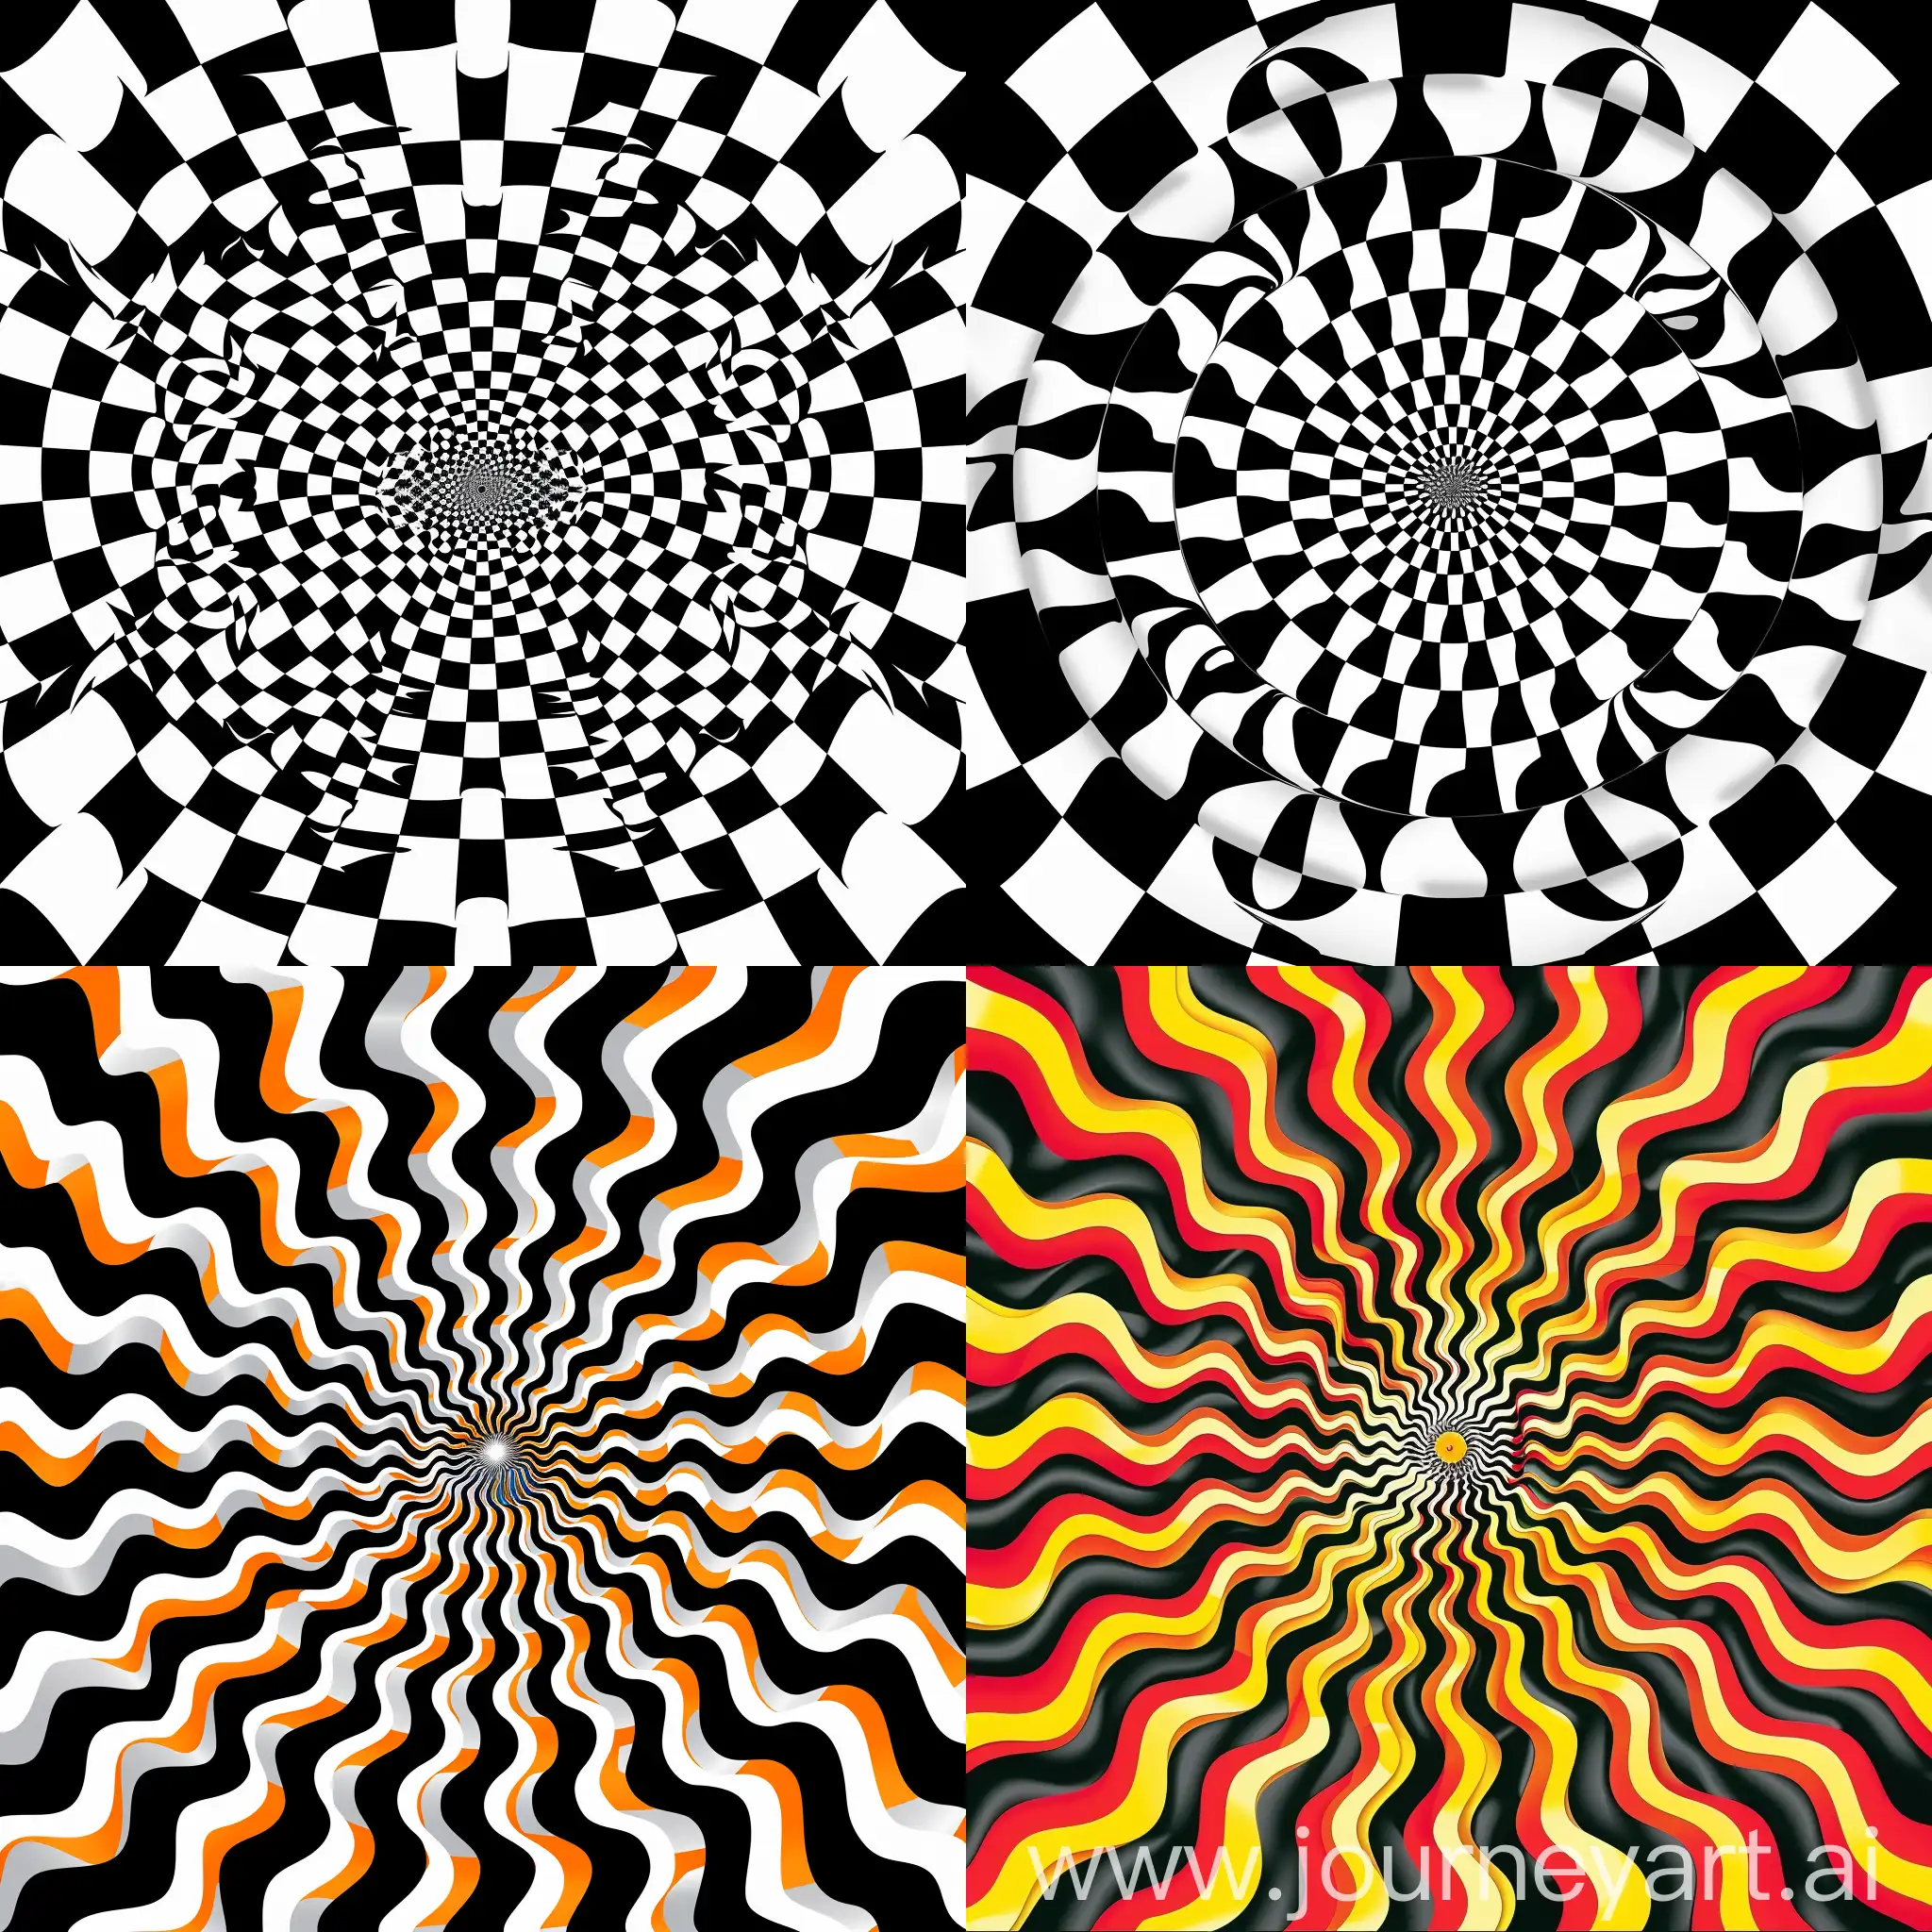 Optical illusion
